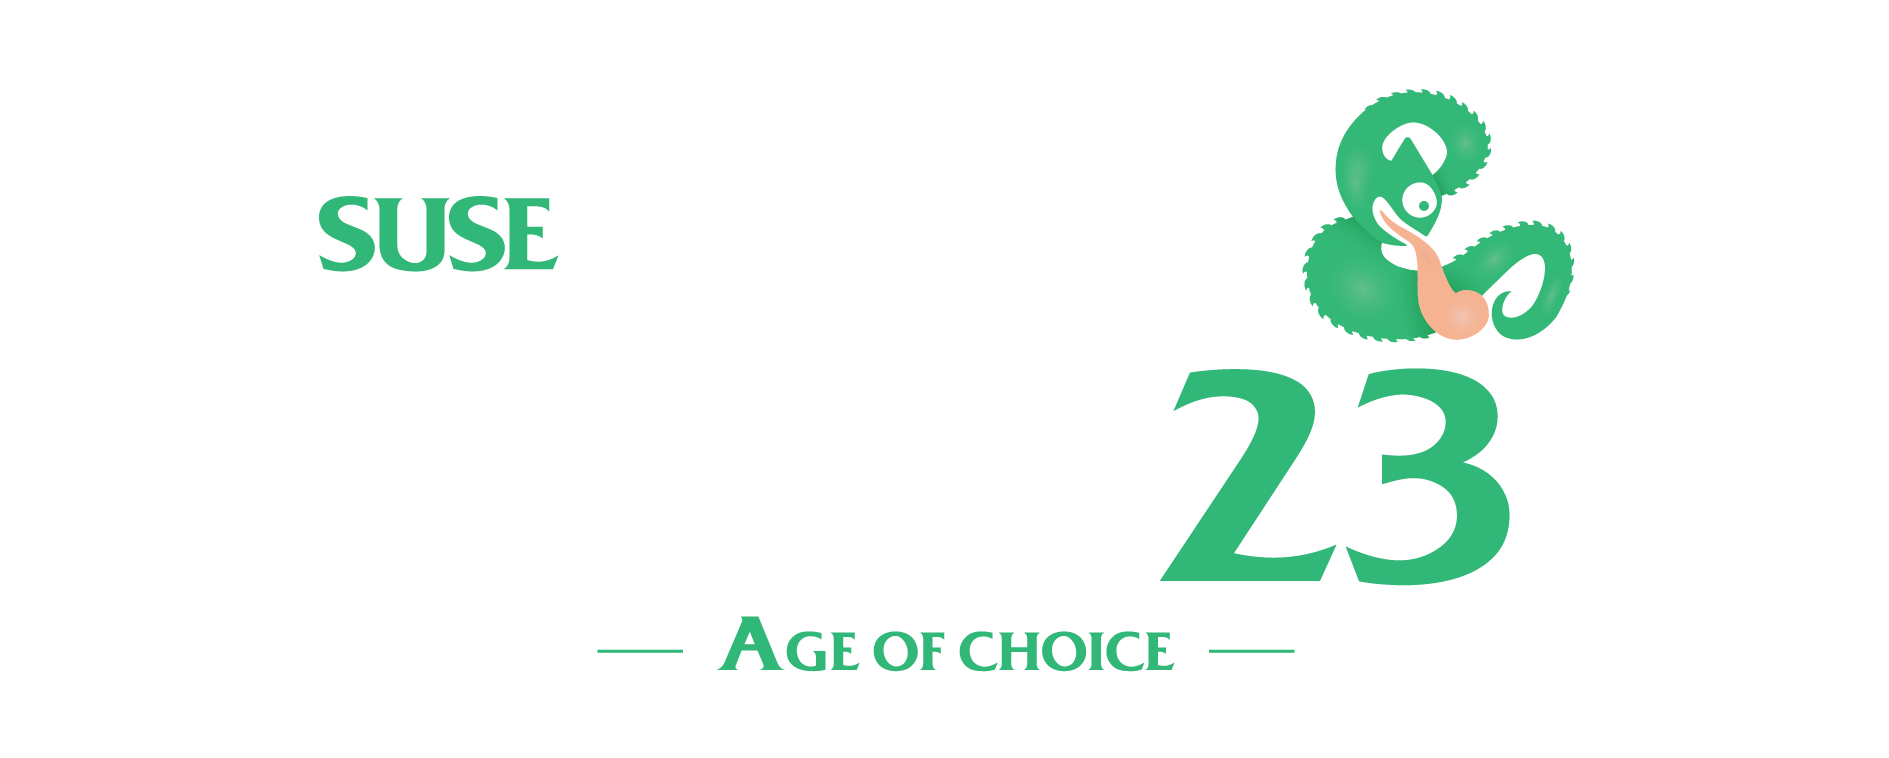 创新马拉松——黑客周 23 将于 11 月举行